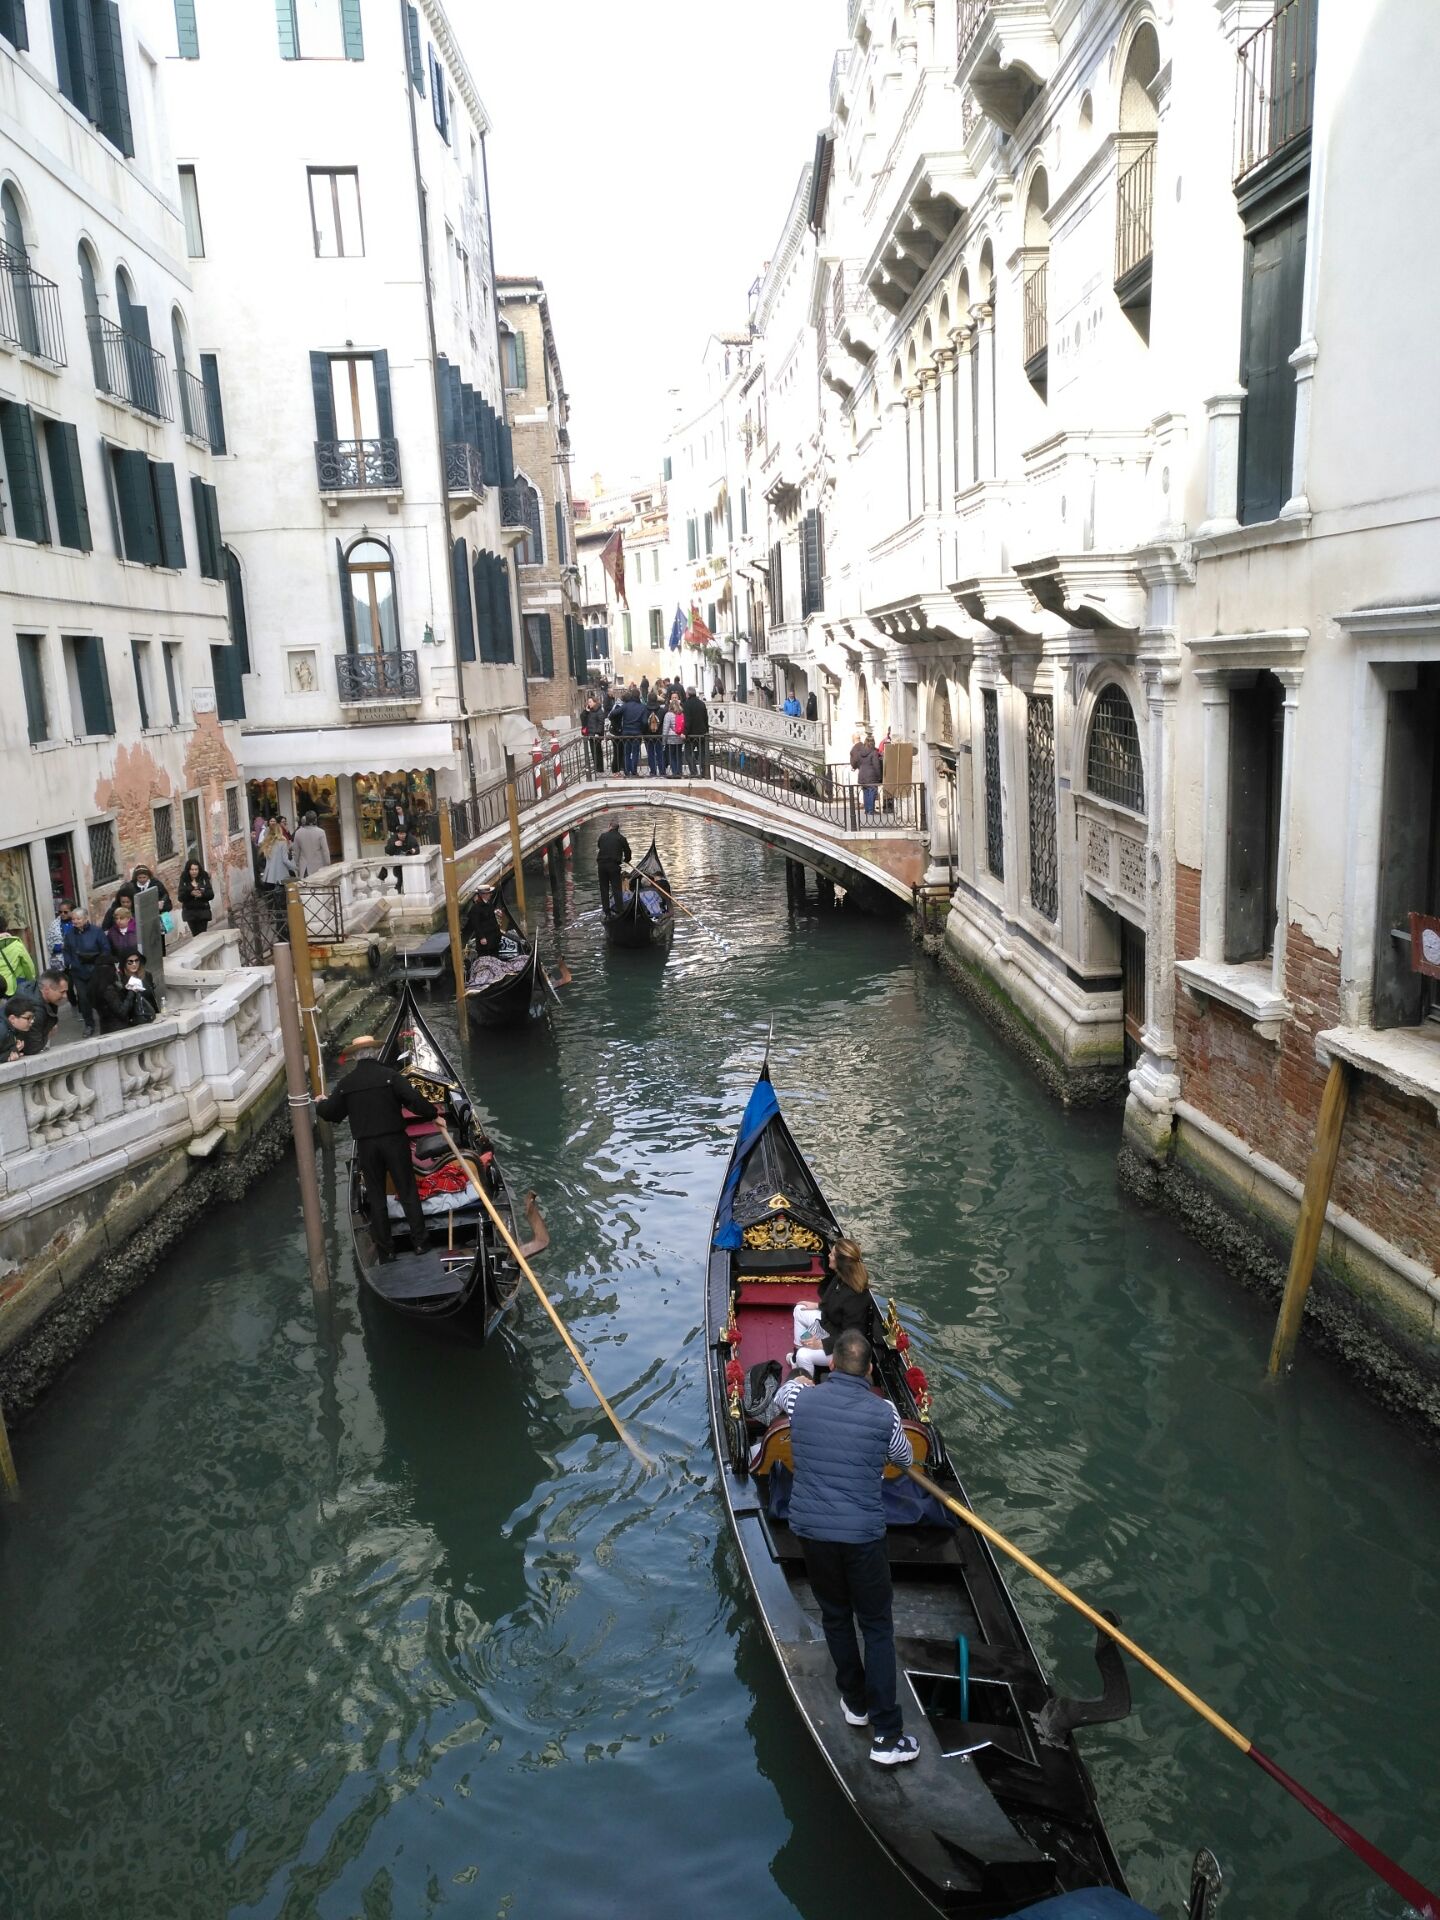 威尼斯水城，向往已久的地方，今天终于来到这里，兴奋不已……